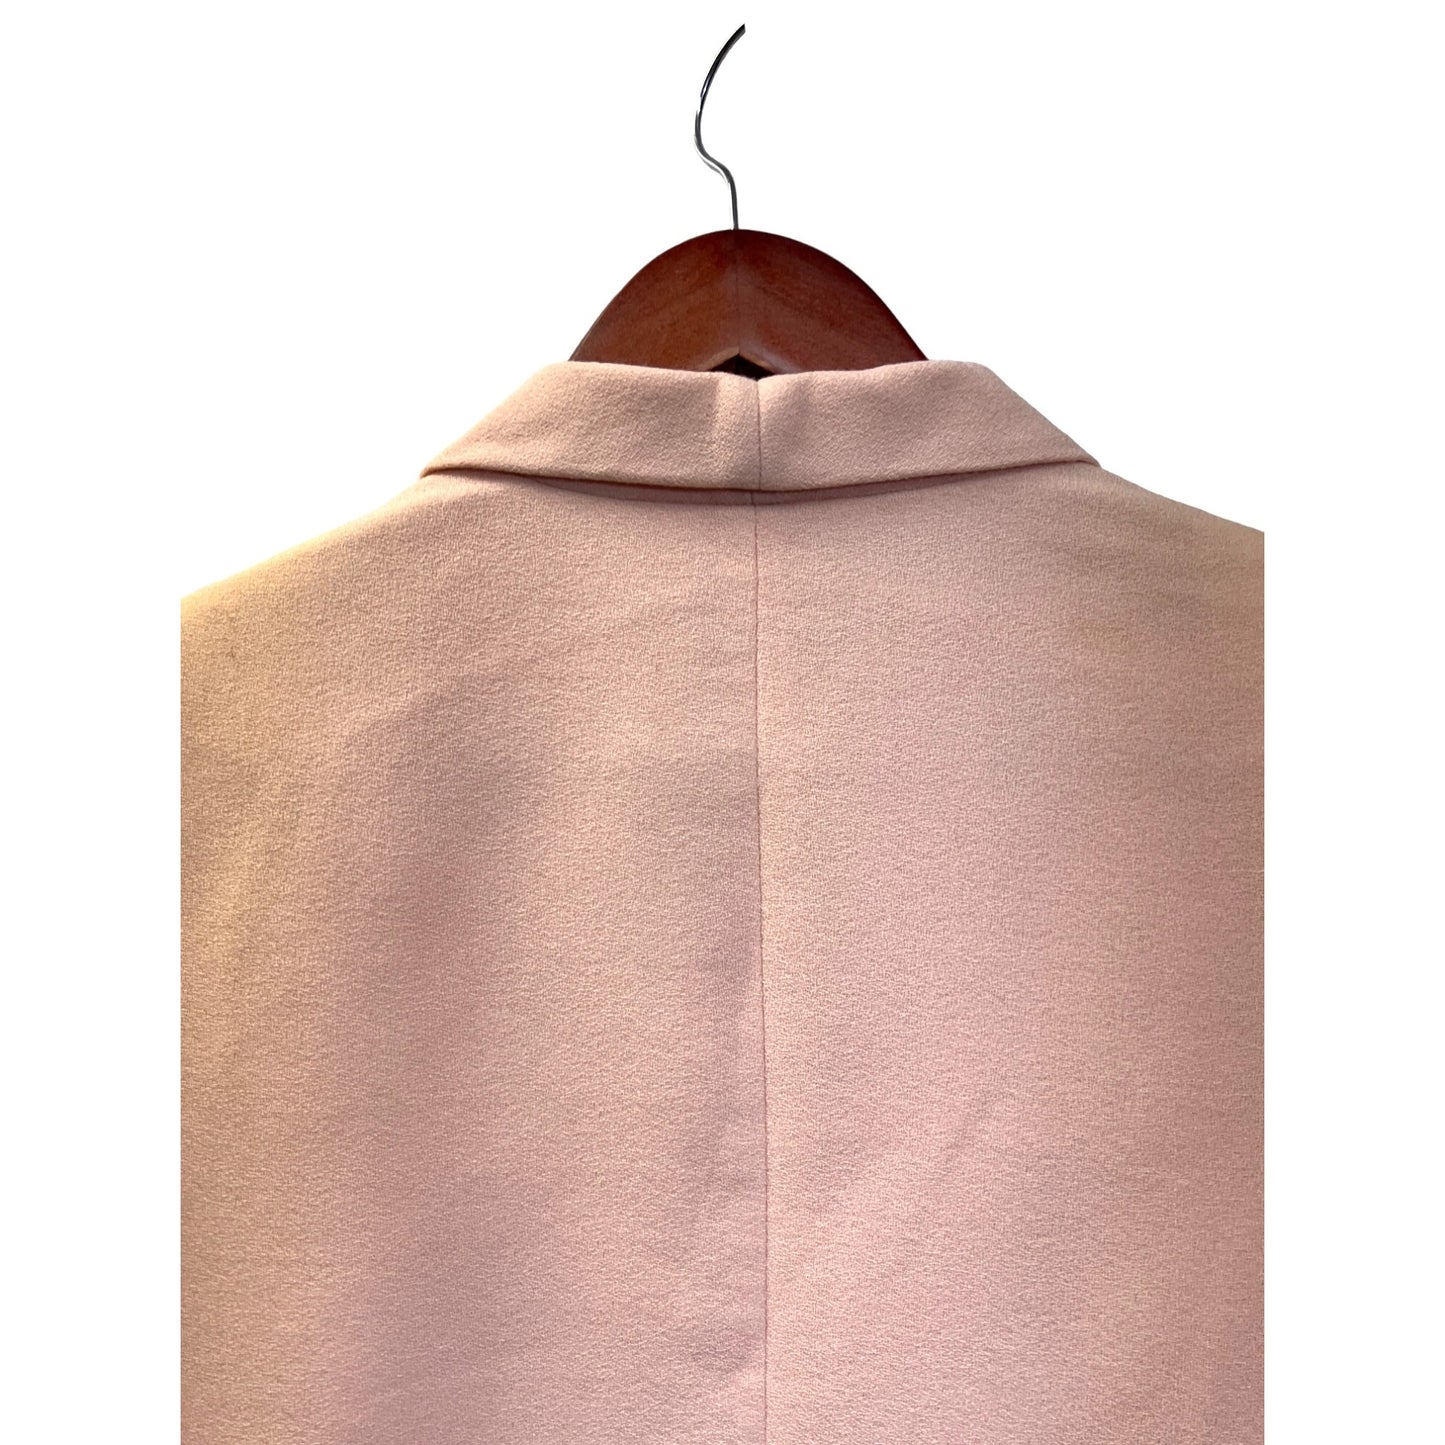 Pendleton Vintage 80's Pink Virgin Wool Cropped Blazer